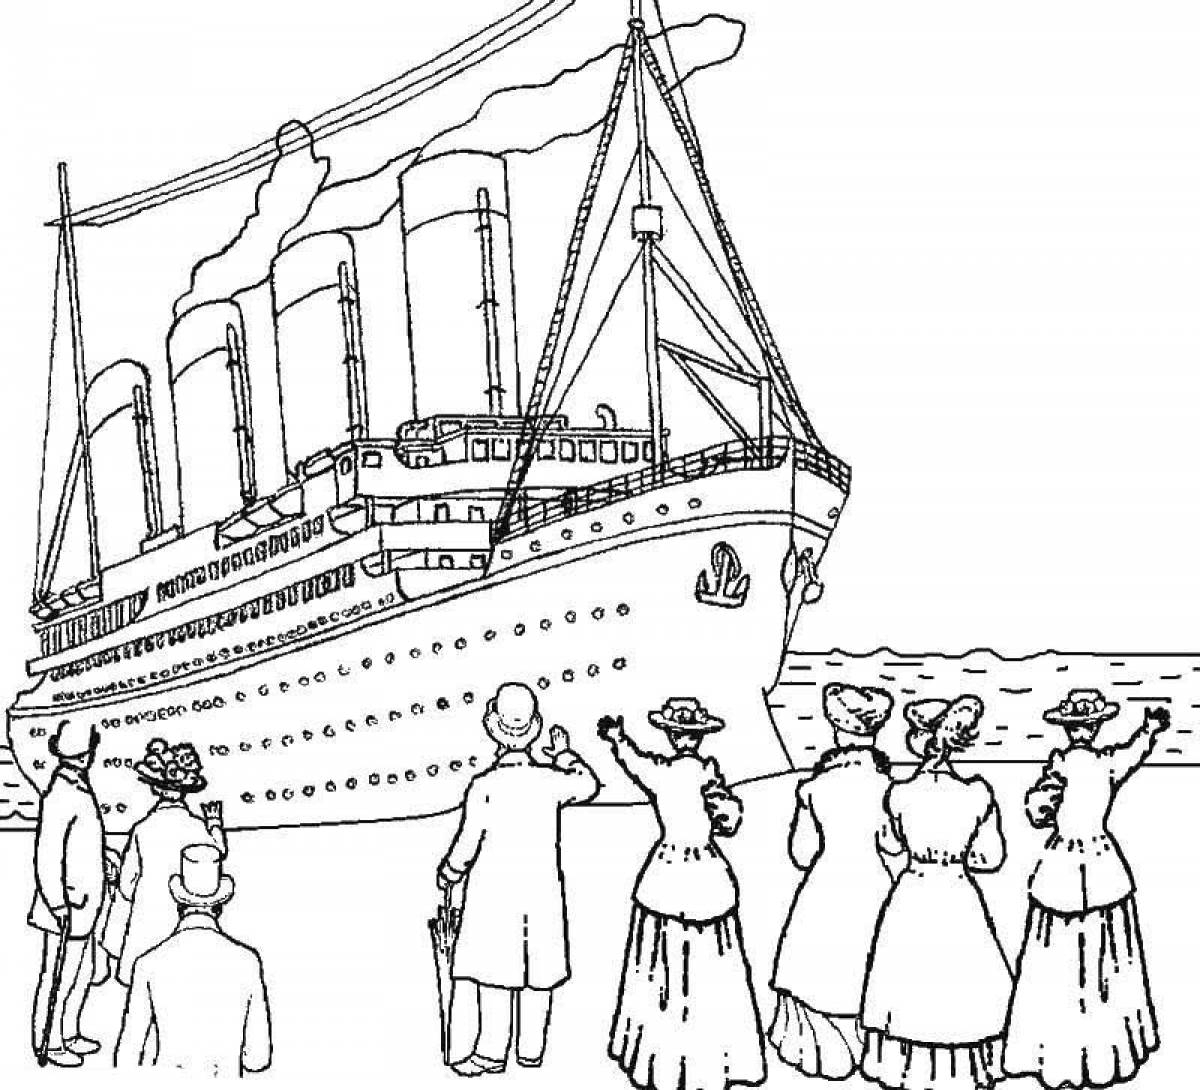 Departure of the titanic